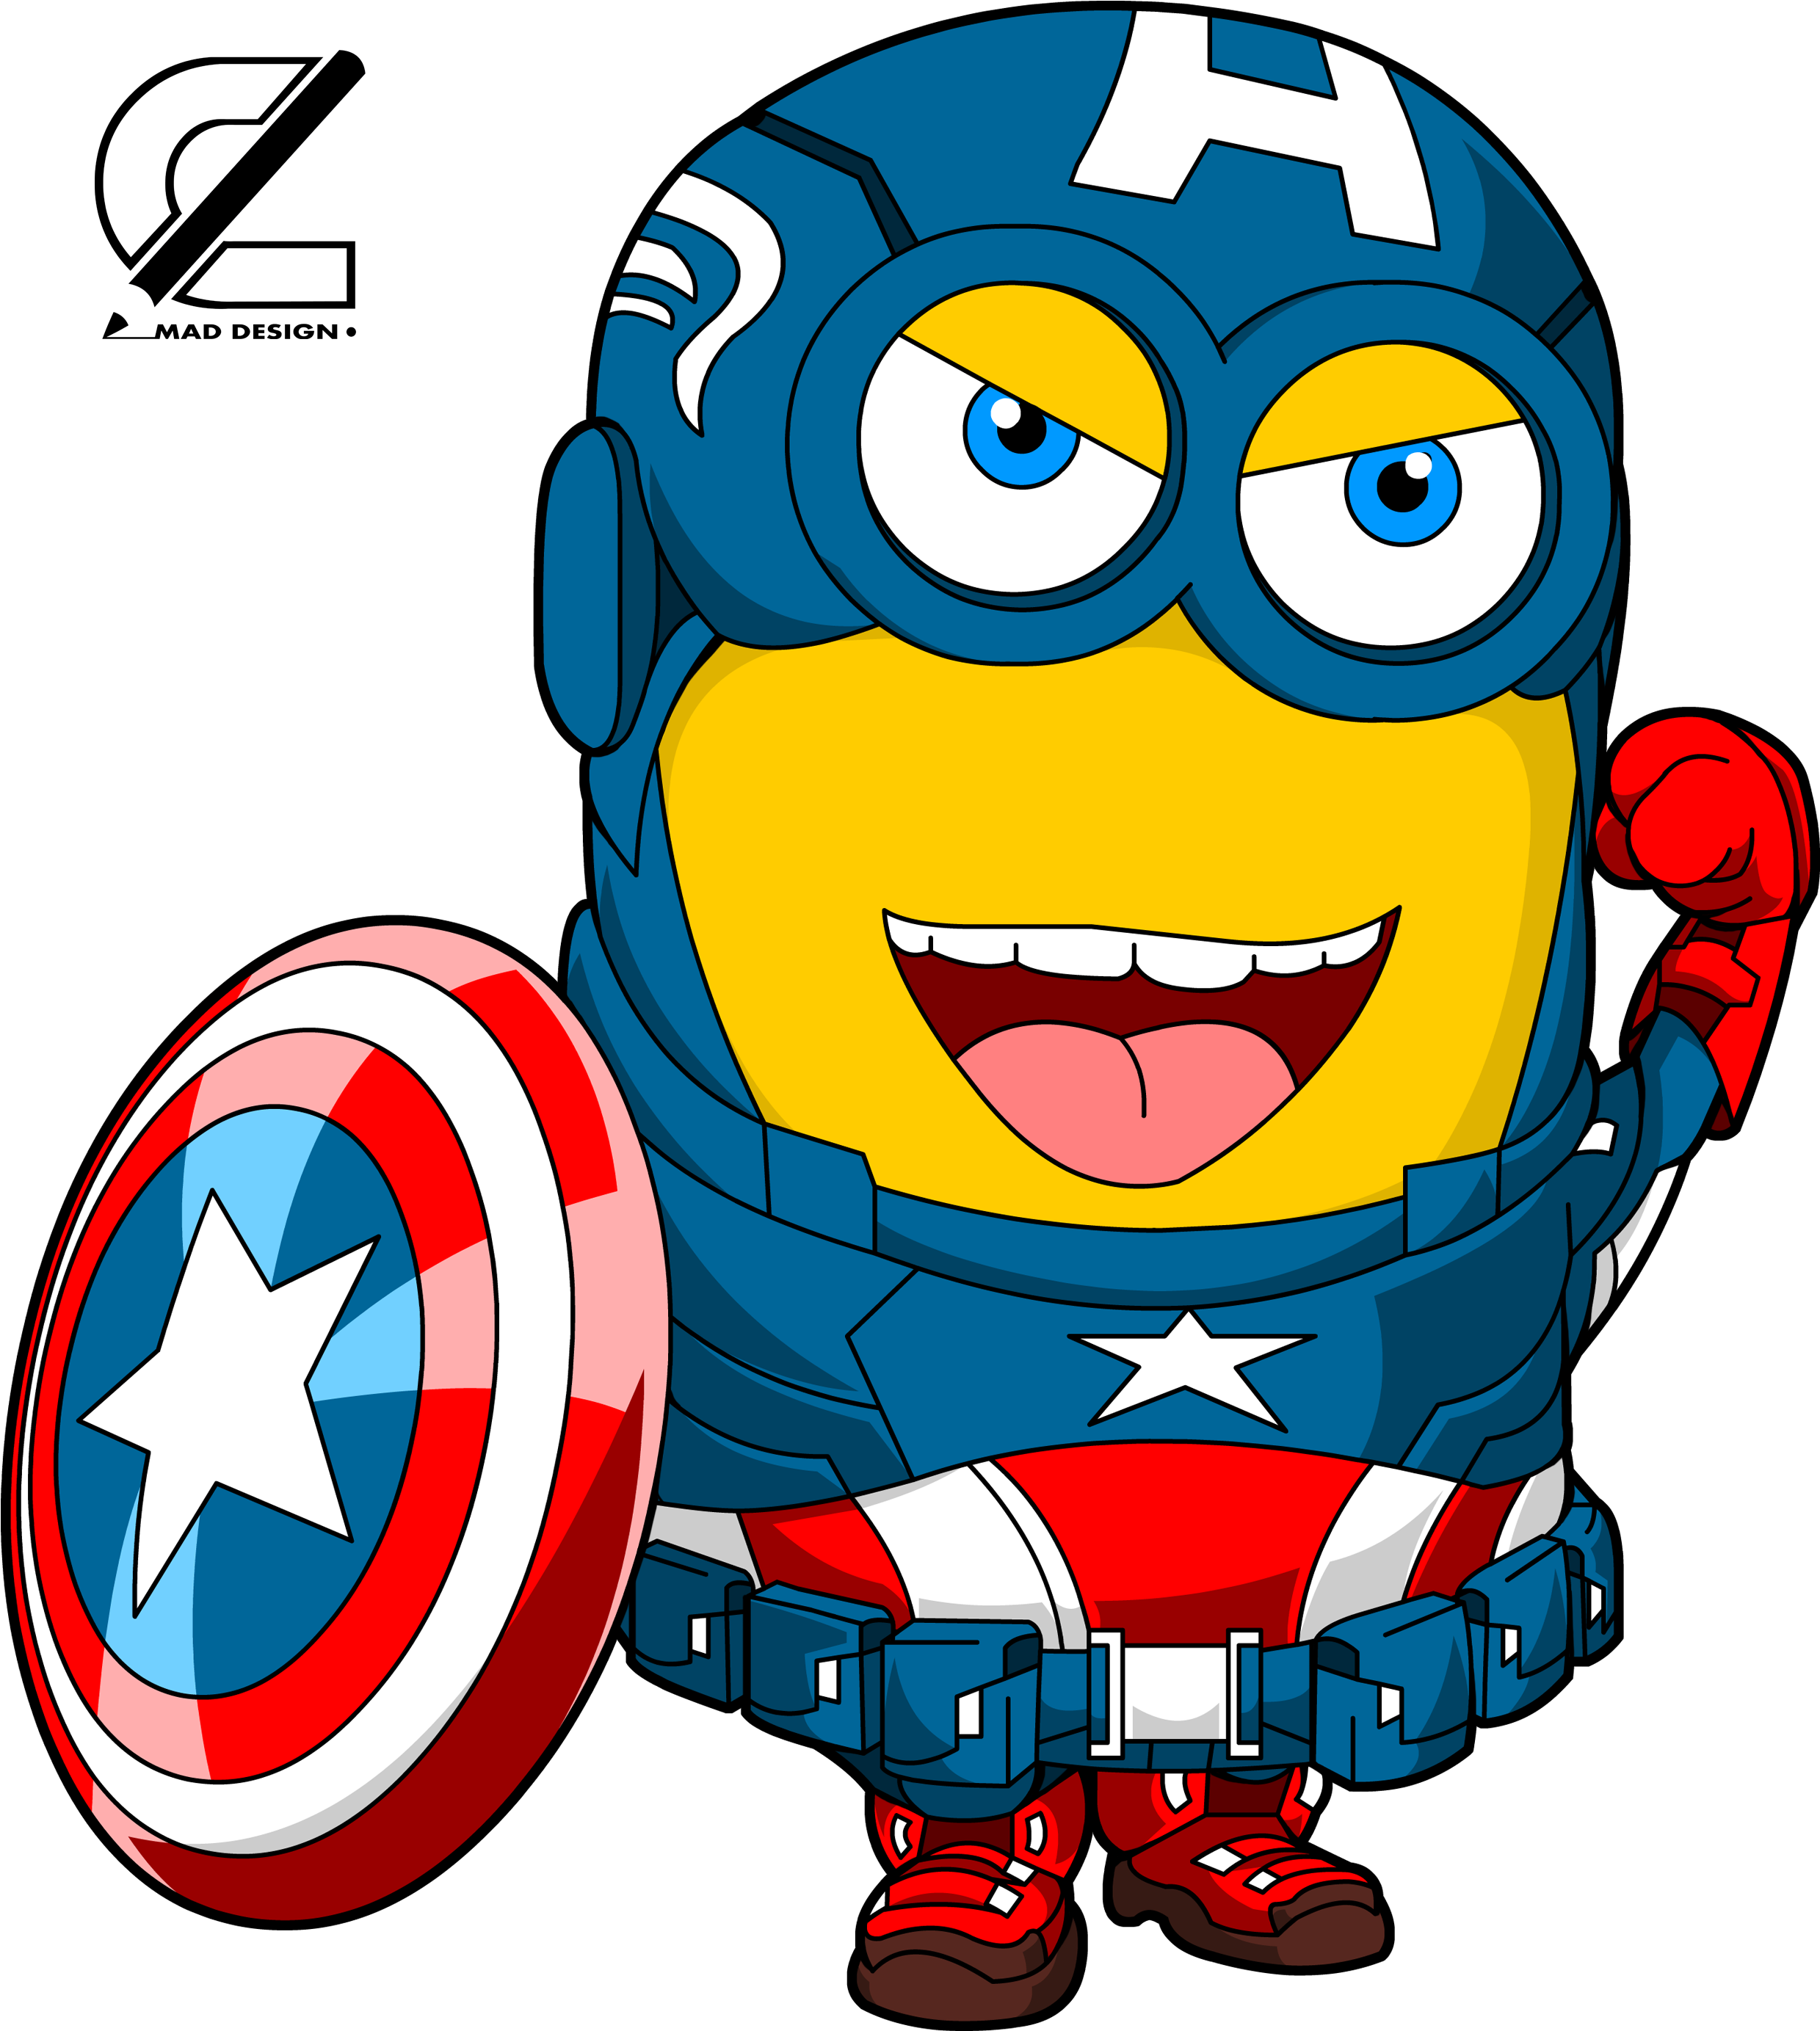 Captain America Minion (despicable Me) - Captain America Minion (2717x3034)